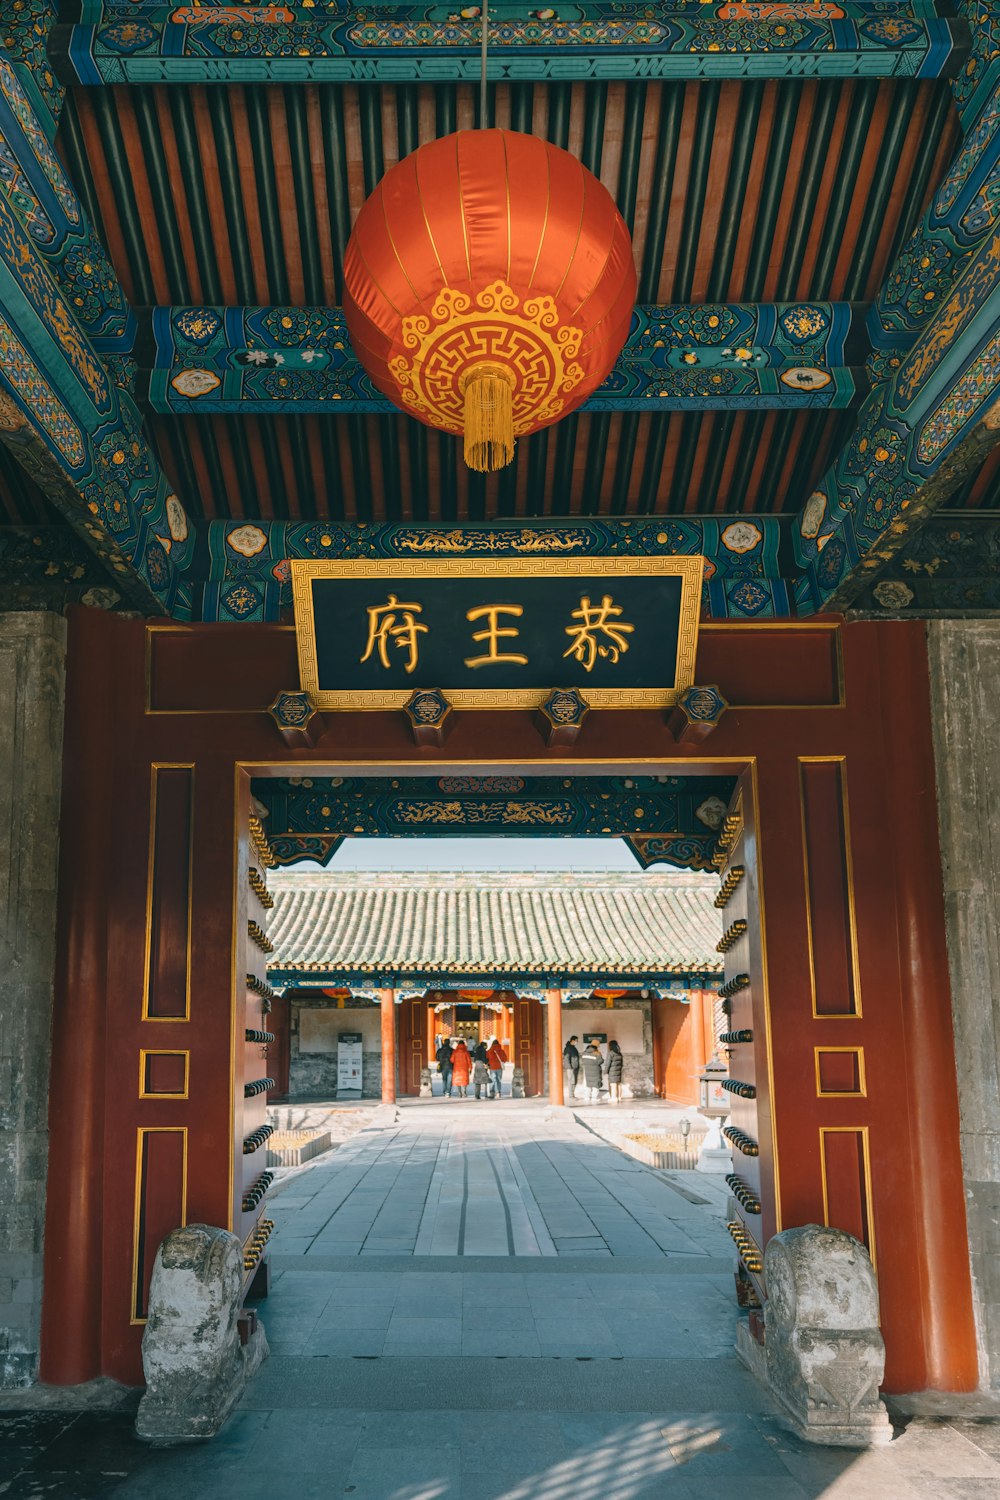 templo chinês vermelho e dourado